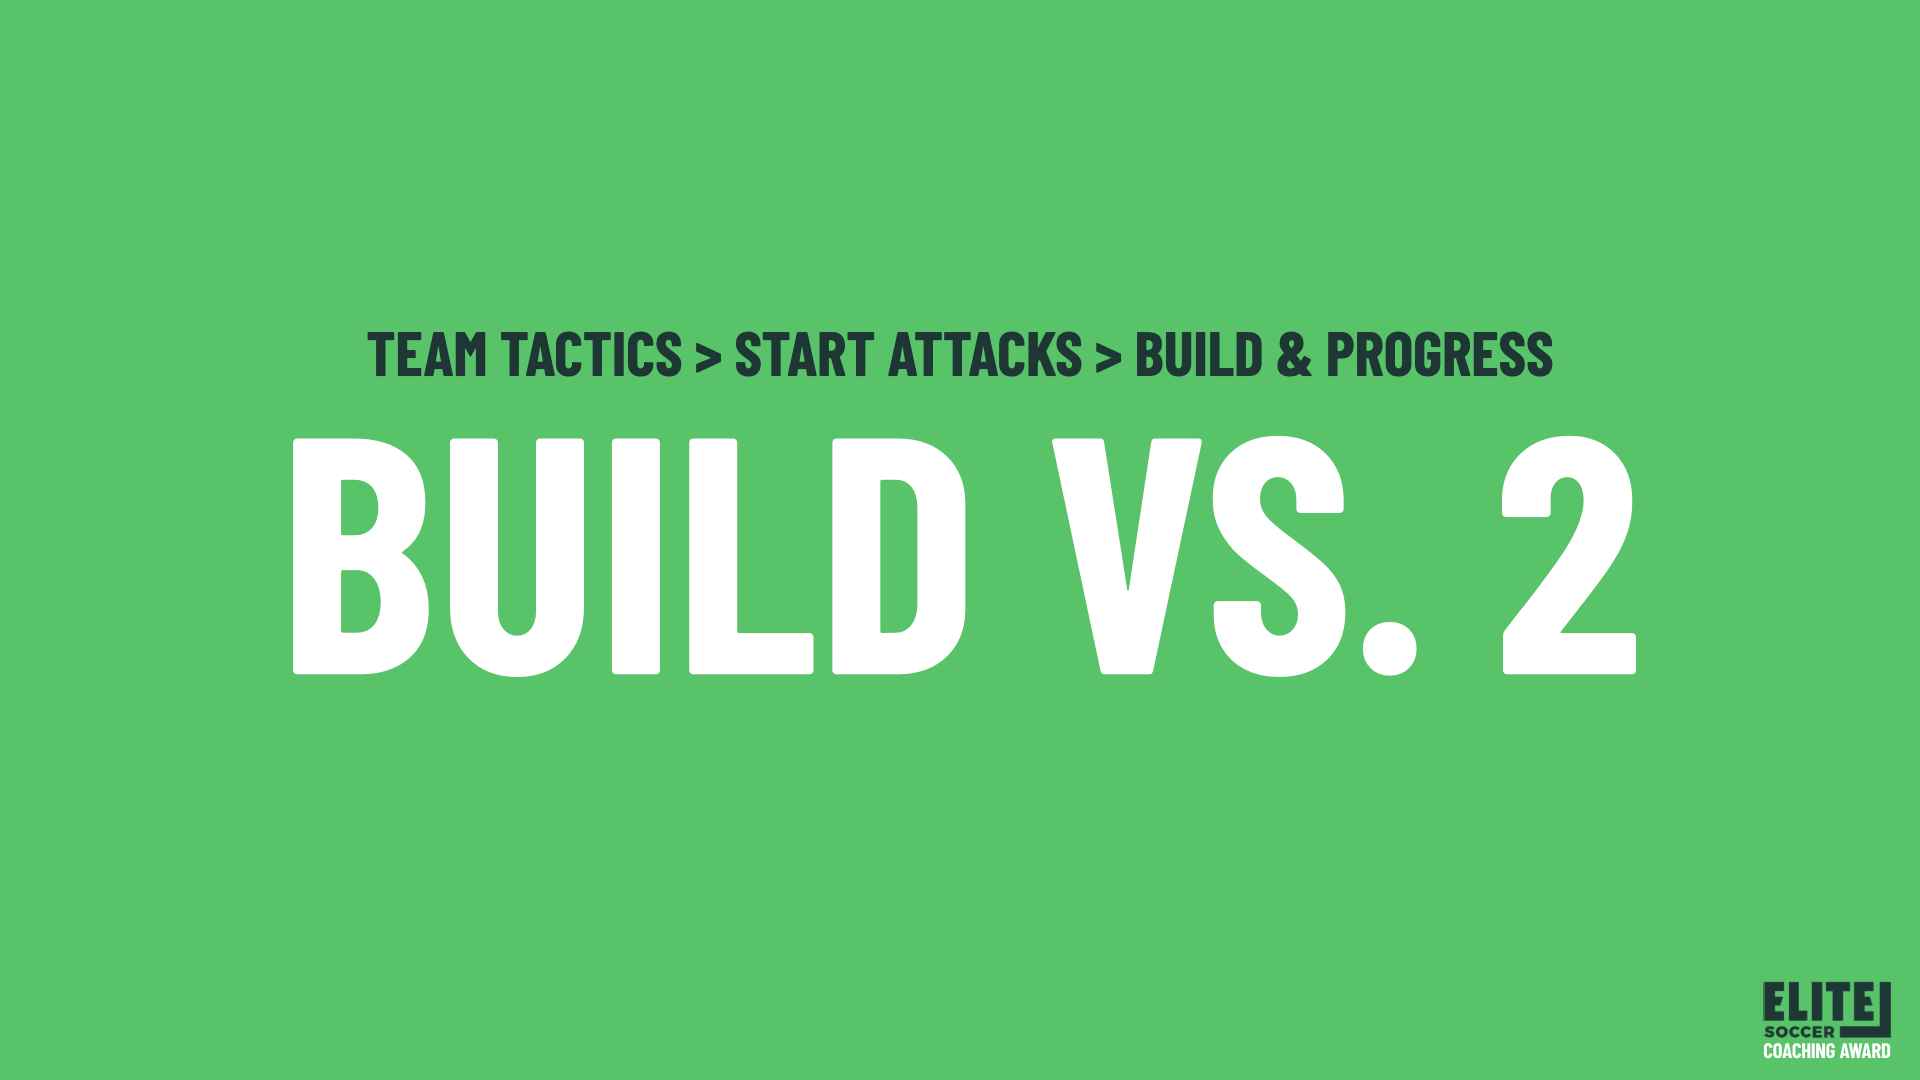 Build vs 2